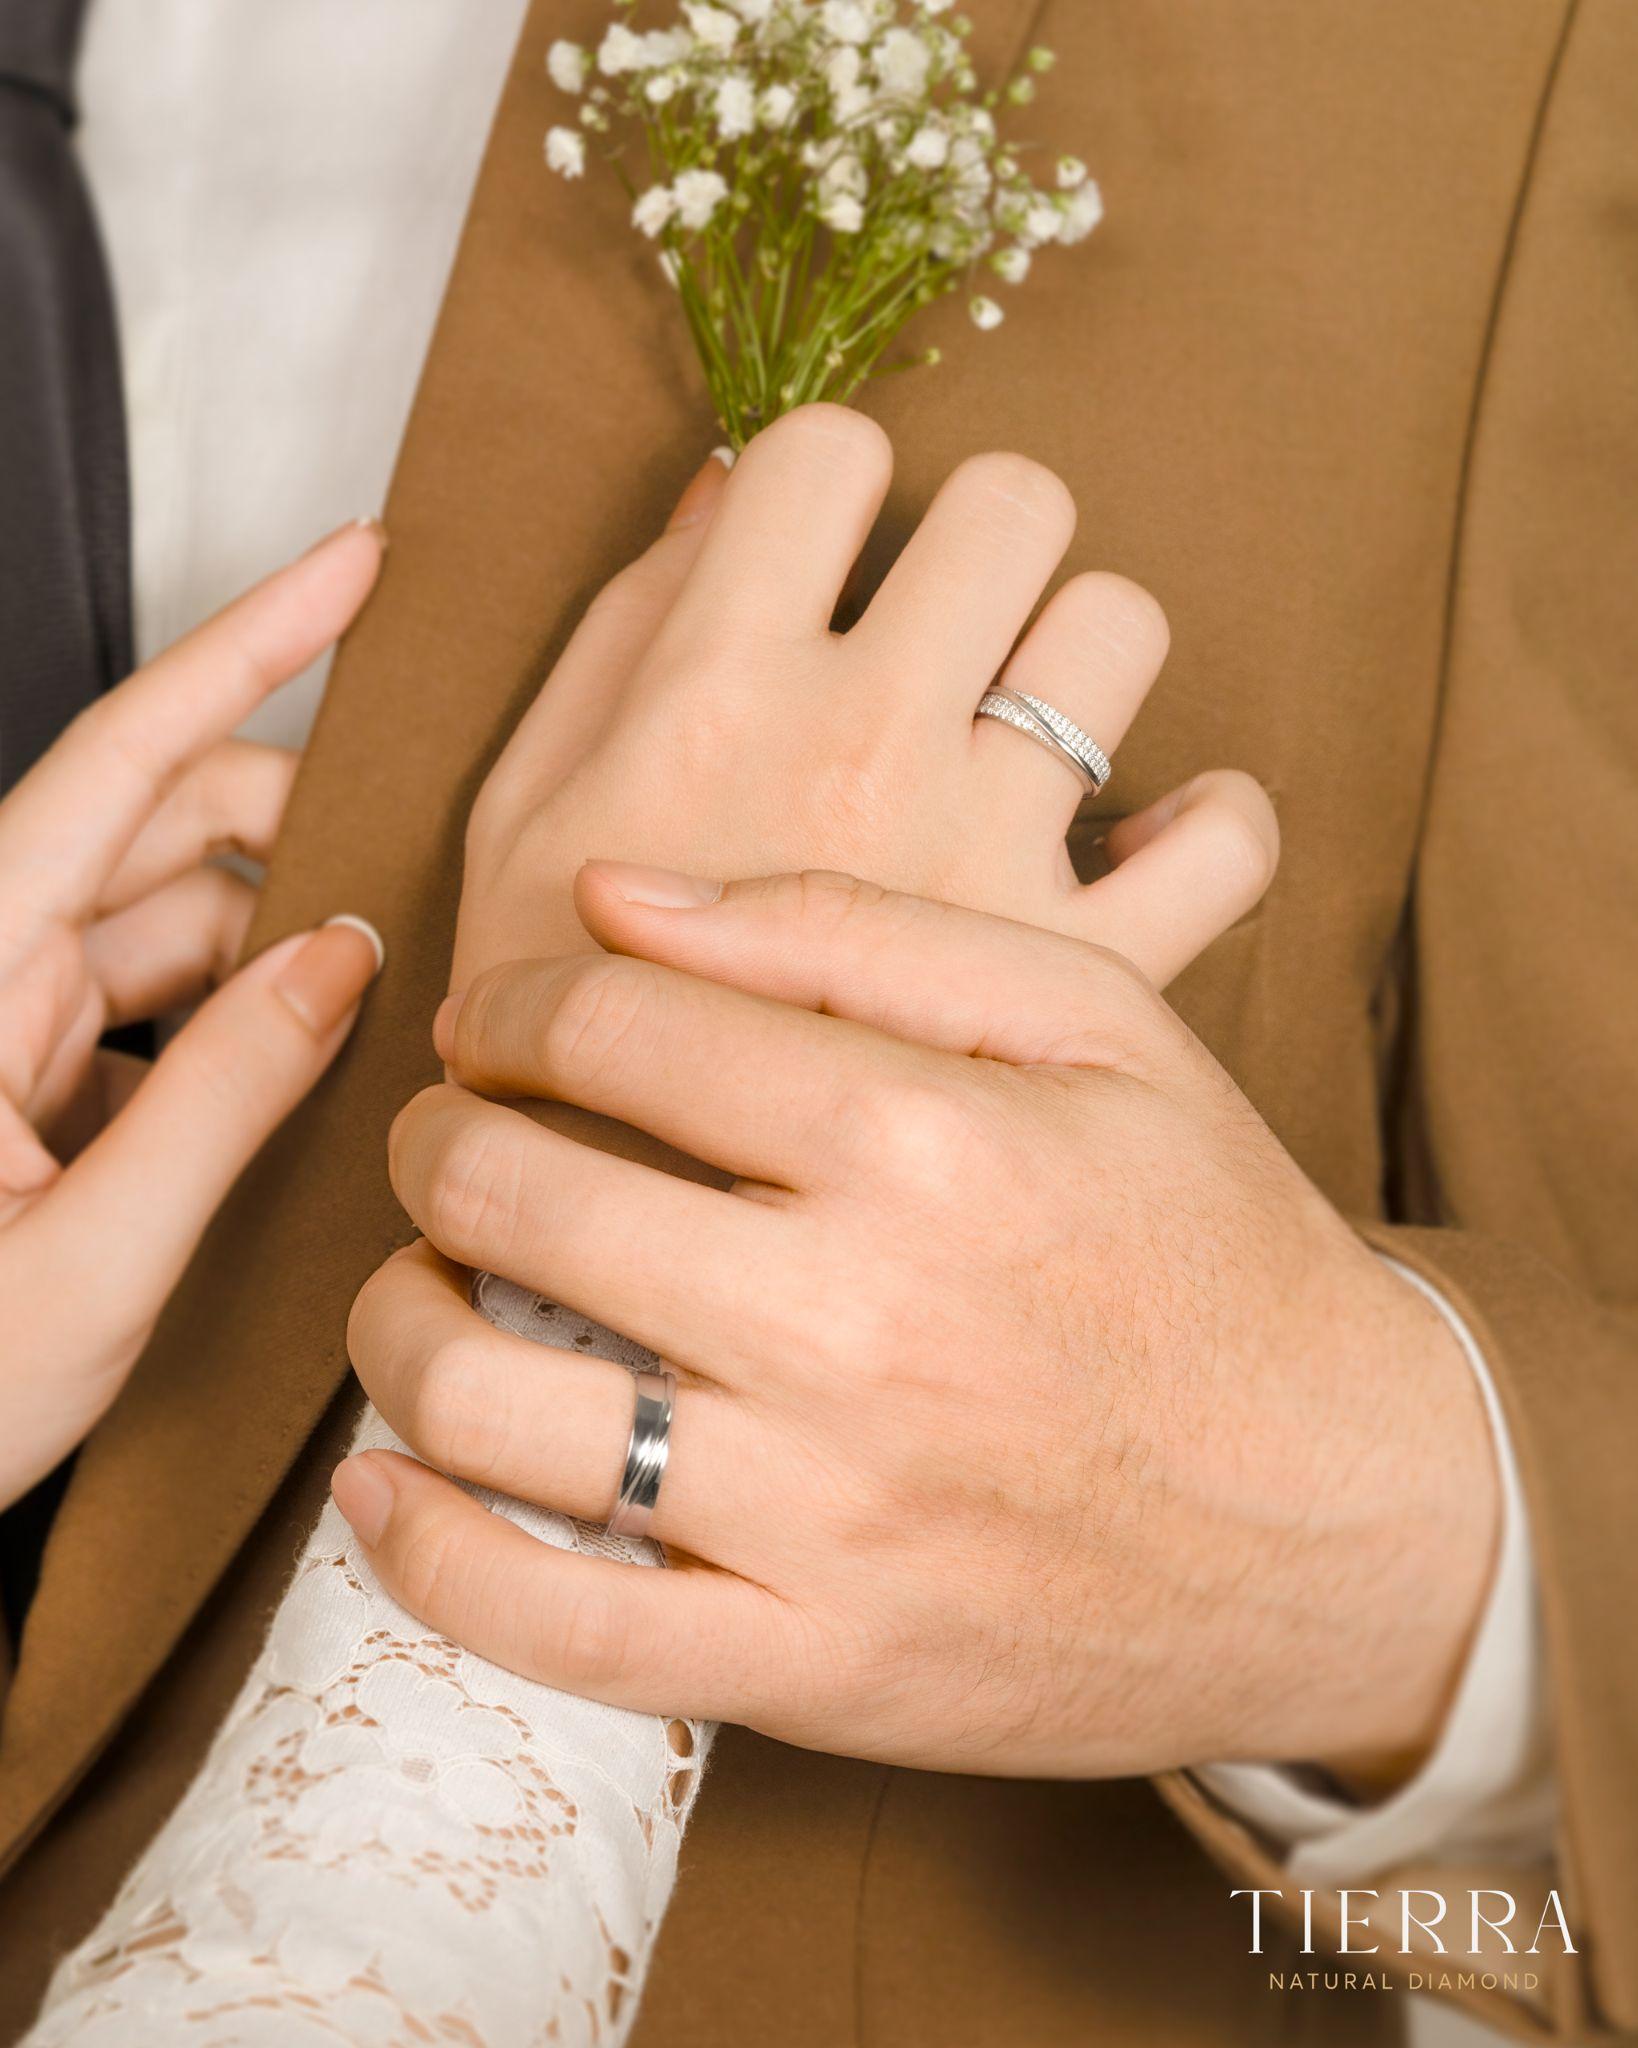 Xu hướng nhẫn cưới vàng trắng cho các cặp đôi thanh lịch, hiện đại - Ảnh 1.